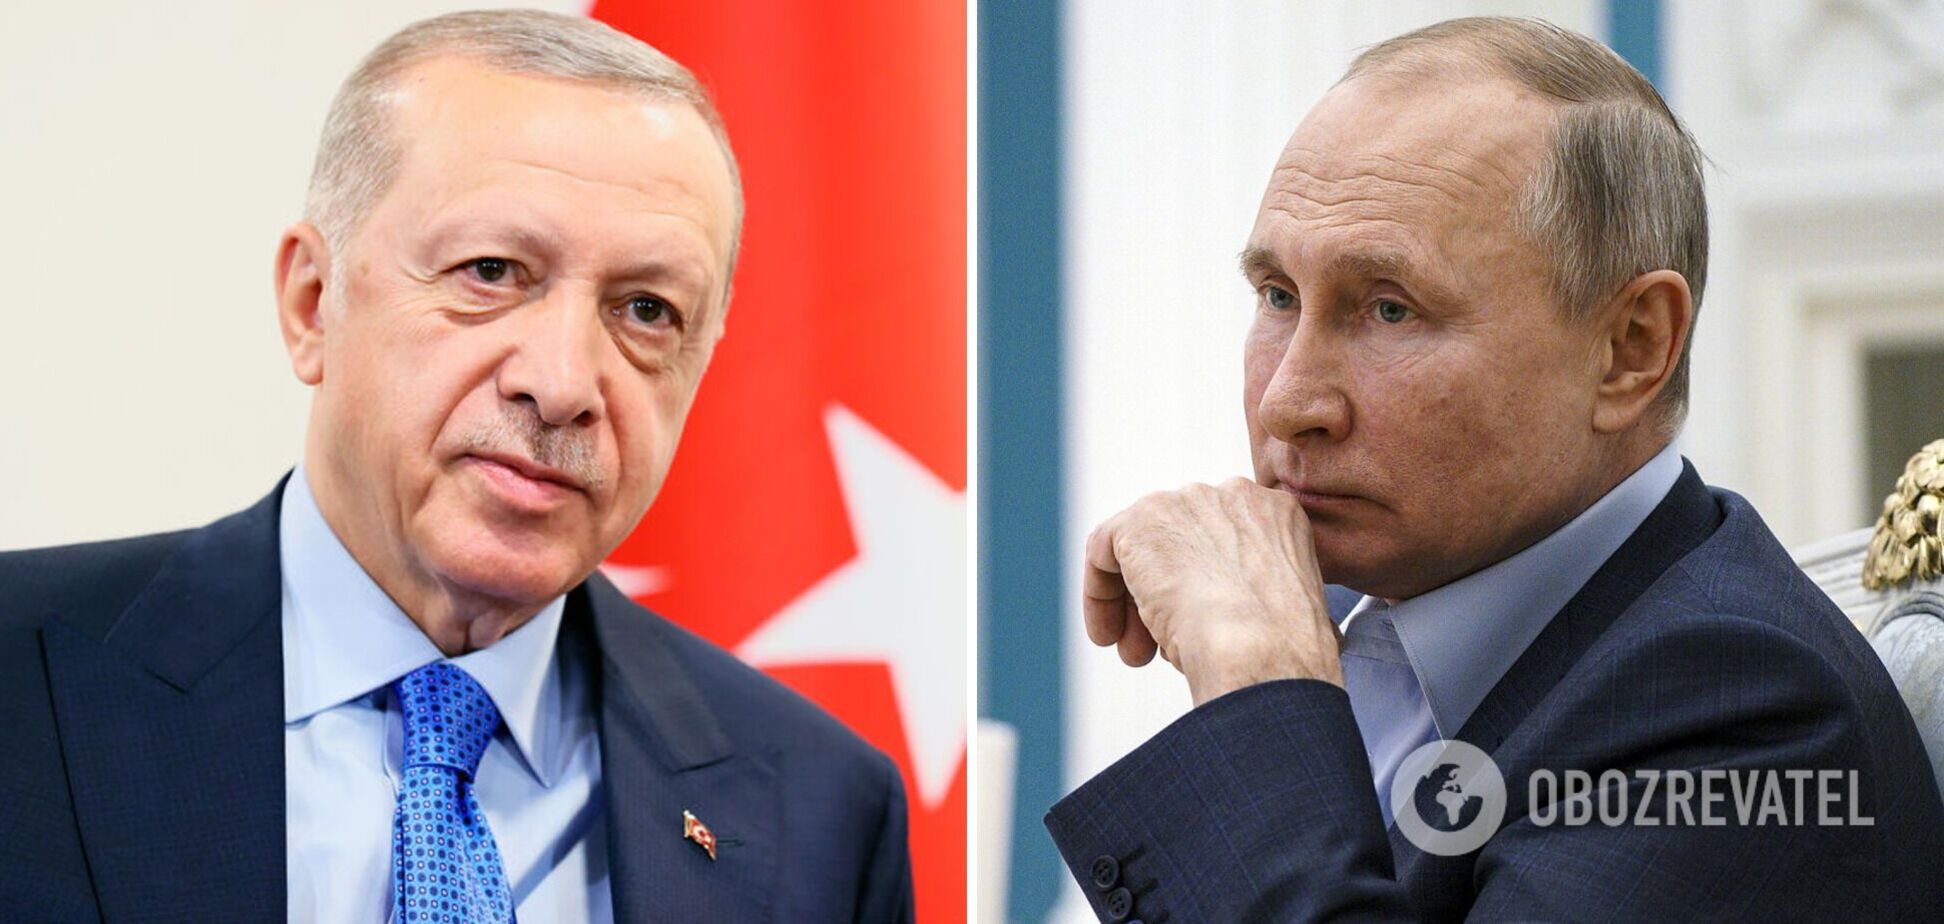 Нагорный Карабах объявил о победе совместного проекта Путина-Эрдогана. Ереван пошел на потерю сознательно